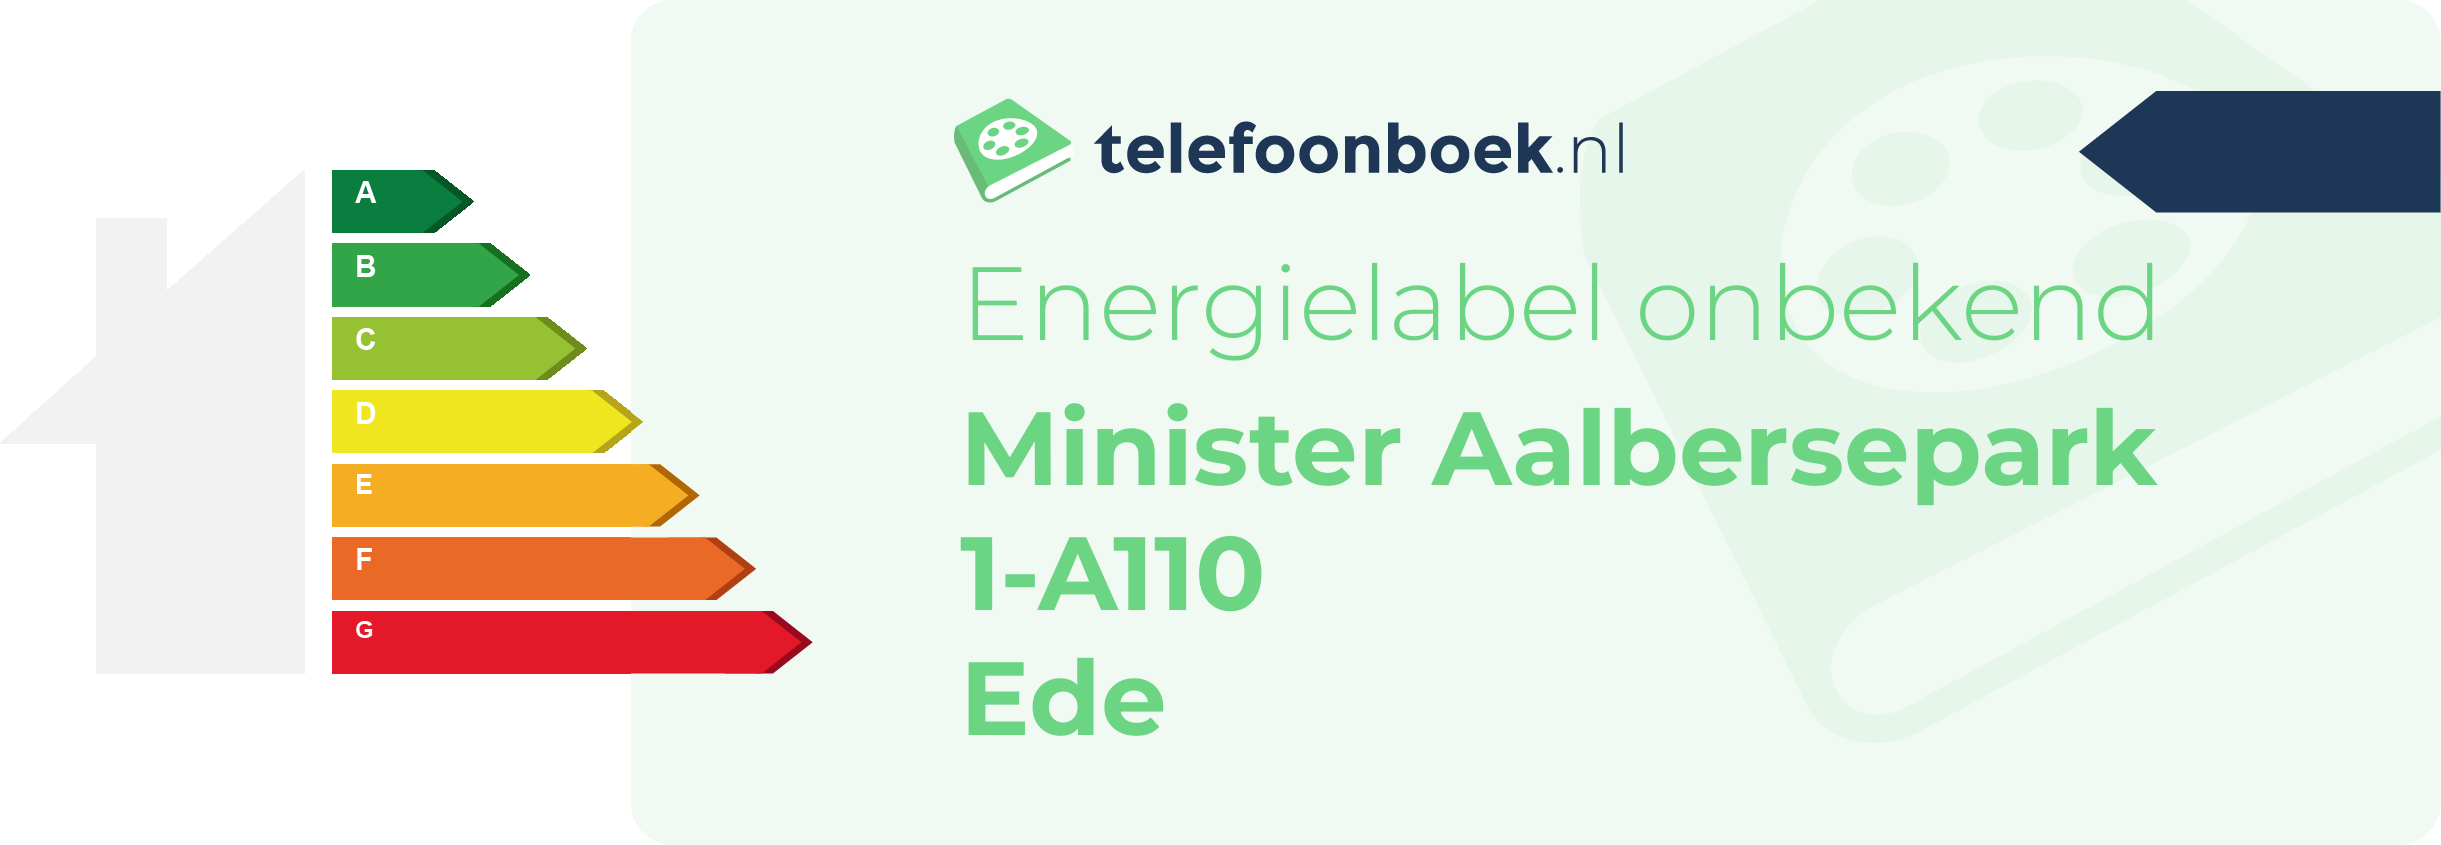 Energielabel Minister Aalbersepark 1-A110 Ede